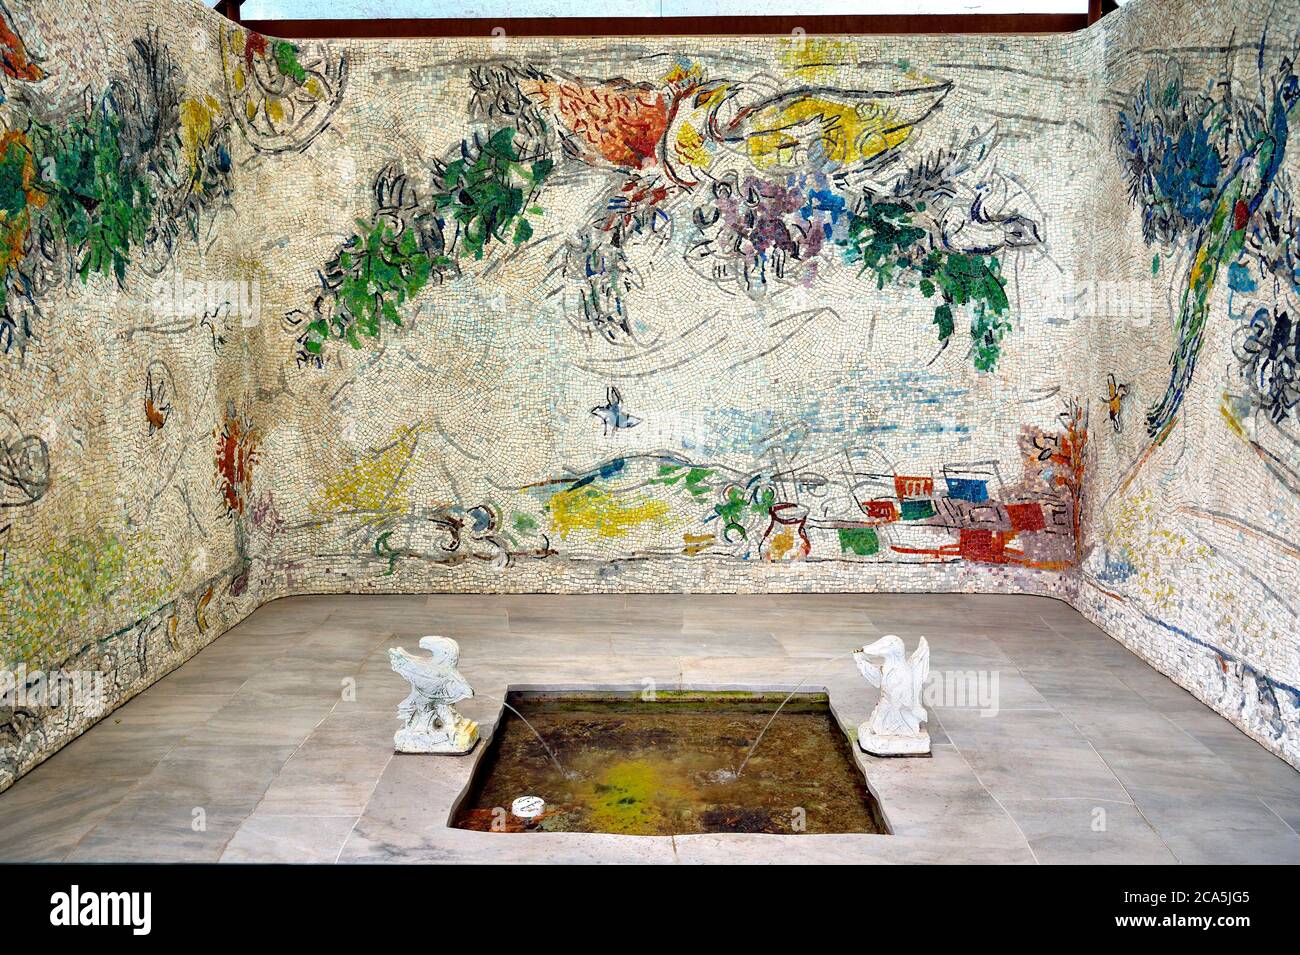 Svizzera, cantone Vallese, Martigny, Fondazione Pierre Gianadda, Marc Chagall, la Cour Chagall, mosaico monumentale, 1964 Foto Stock